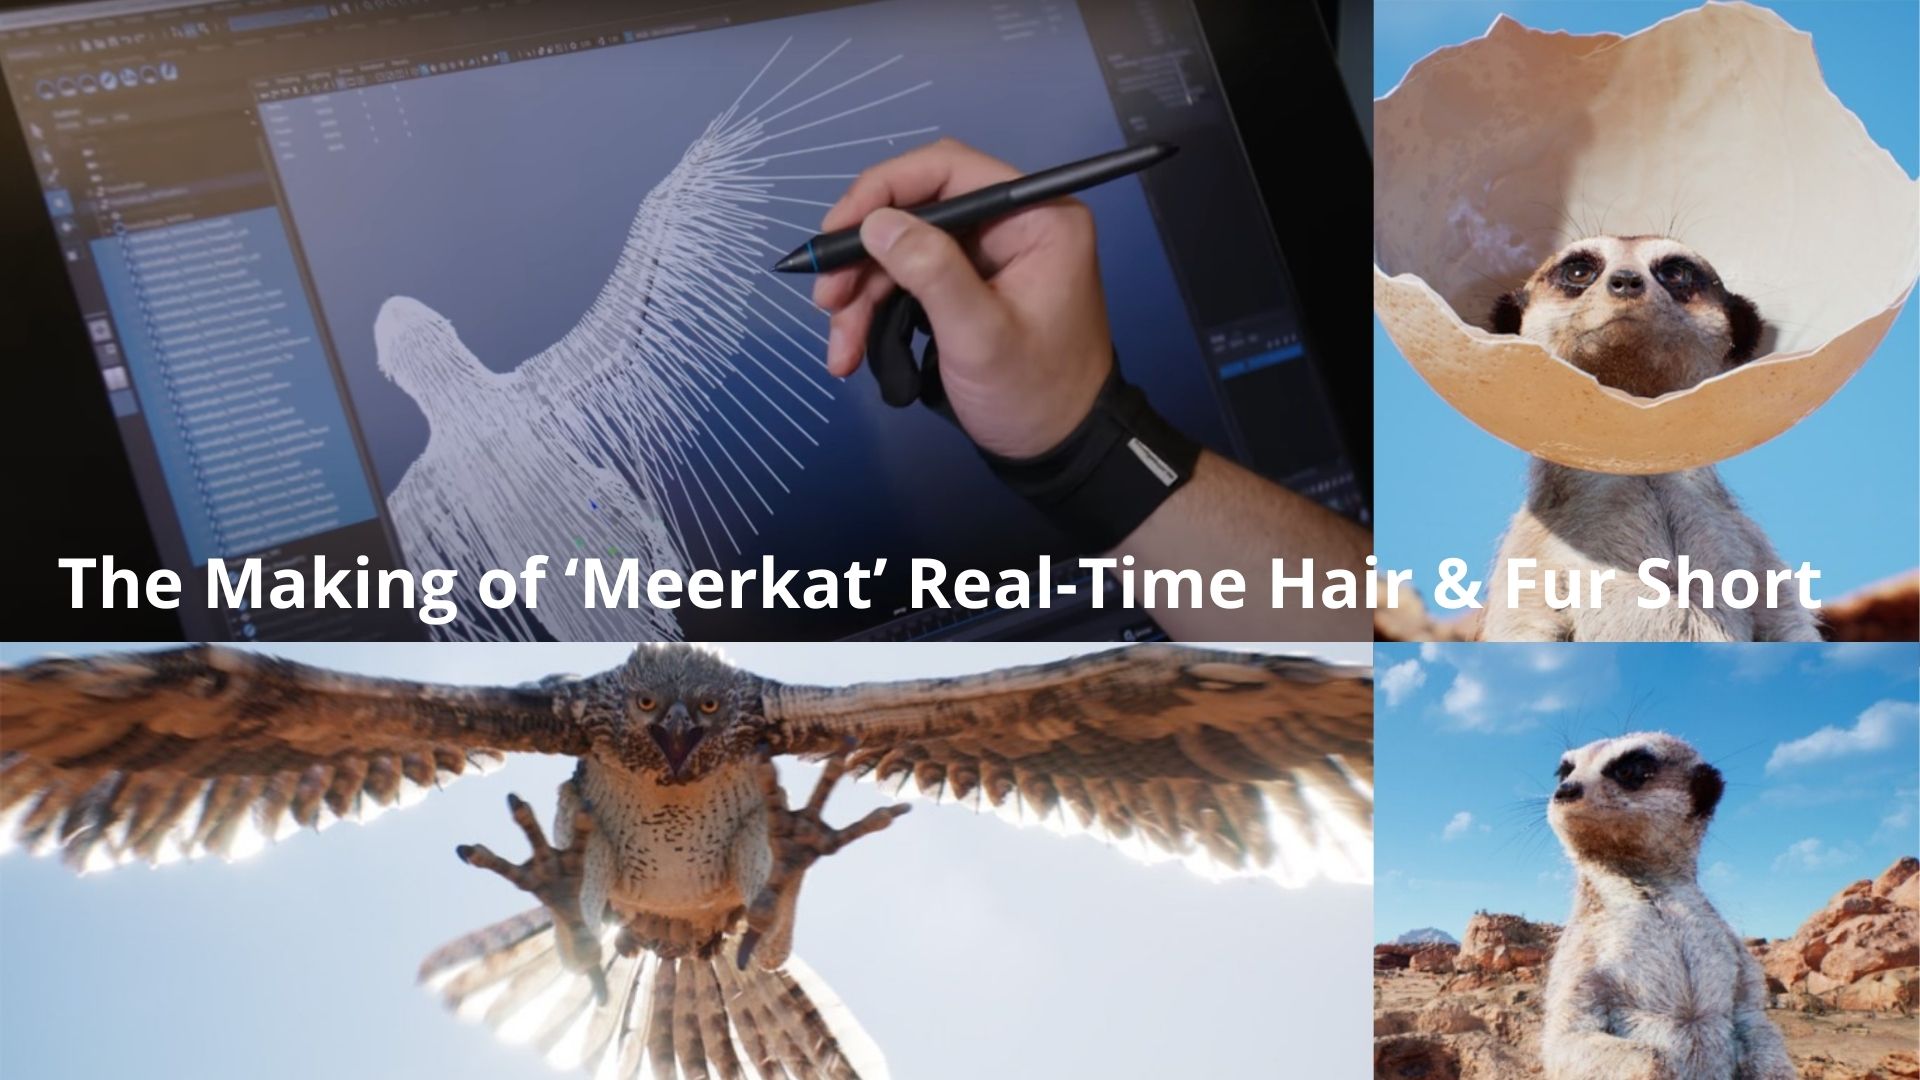 The Making of ‘Meerkat’ Real-Time Hair & Fur Short